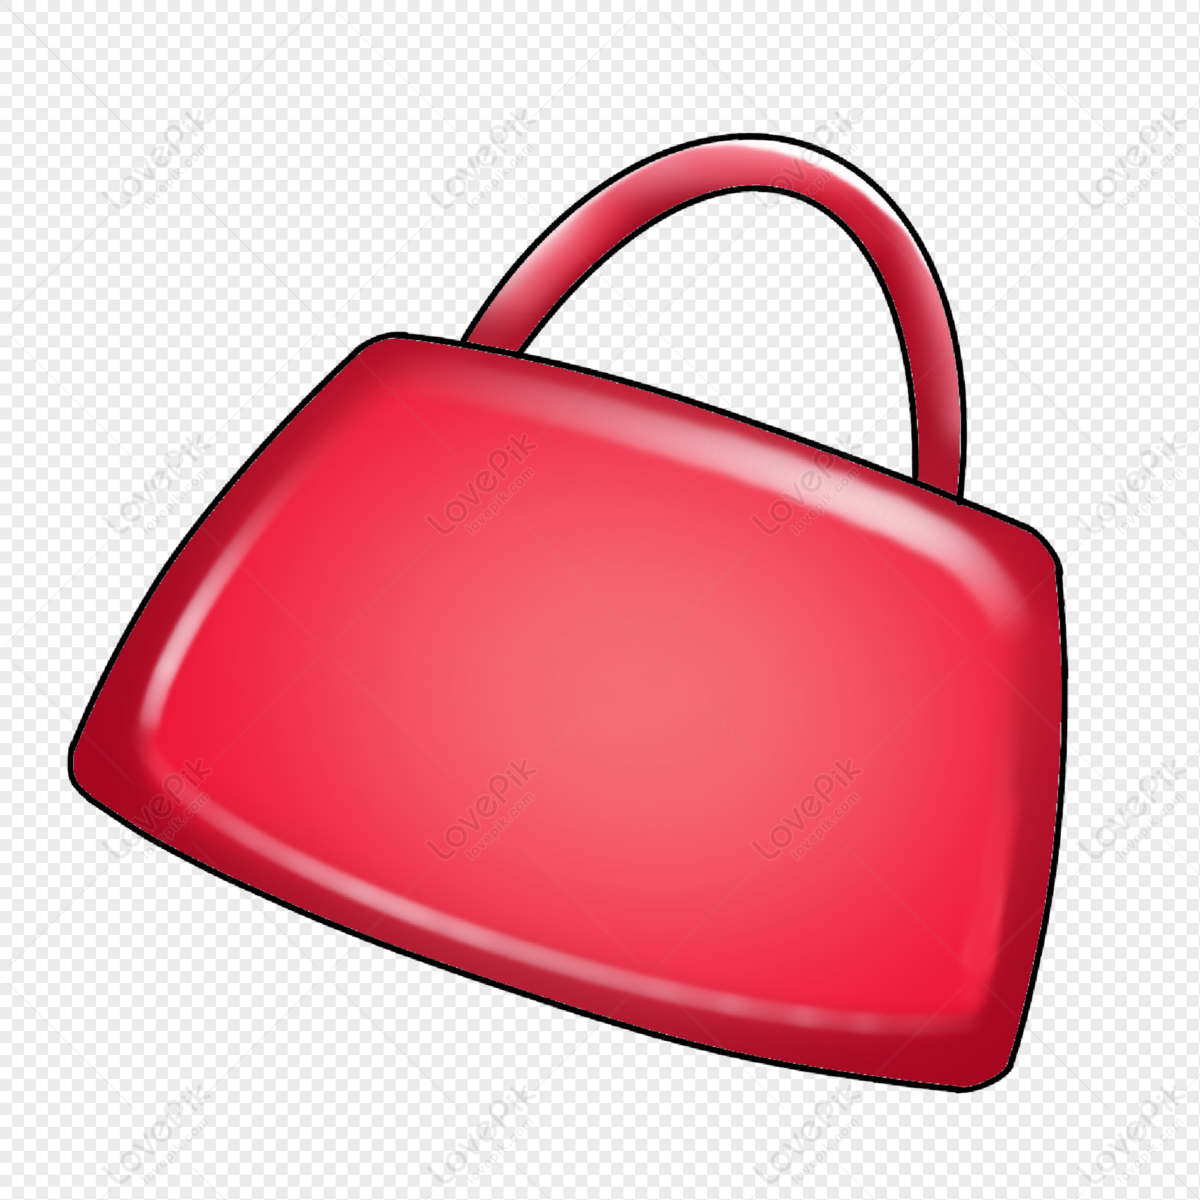 Handbag Clipart, Purse Clipart, Clip Art, Designer Bags, Fashion,  Scrapbooking, Party Invitations, Graphics, PNG JPEG, Download - Etsy | Bags  designer, Purses, Handbag